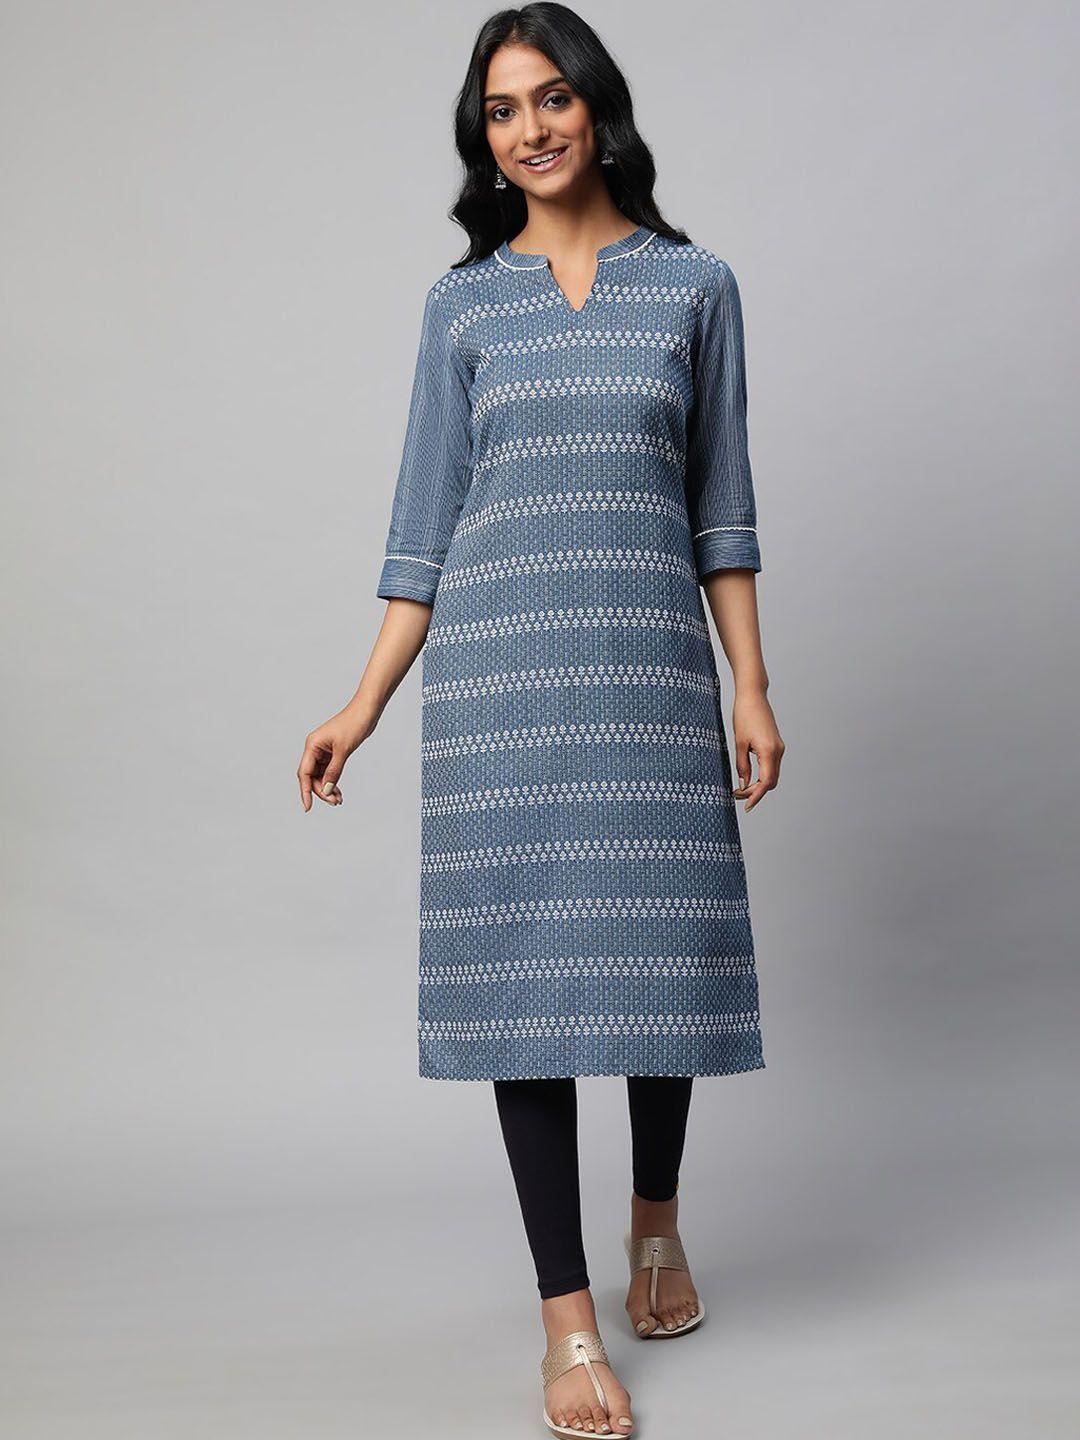 aurelia woven design pure cotton kurta & leggings